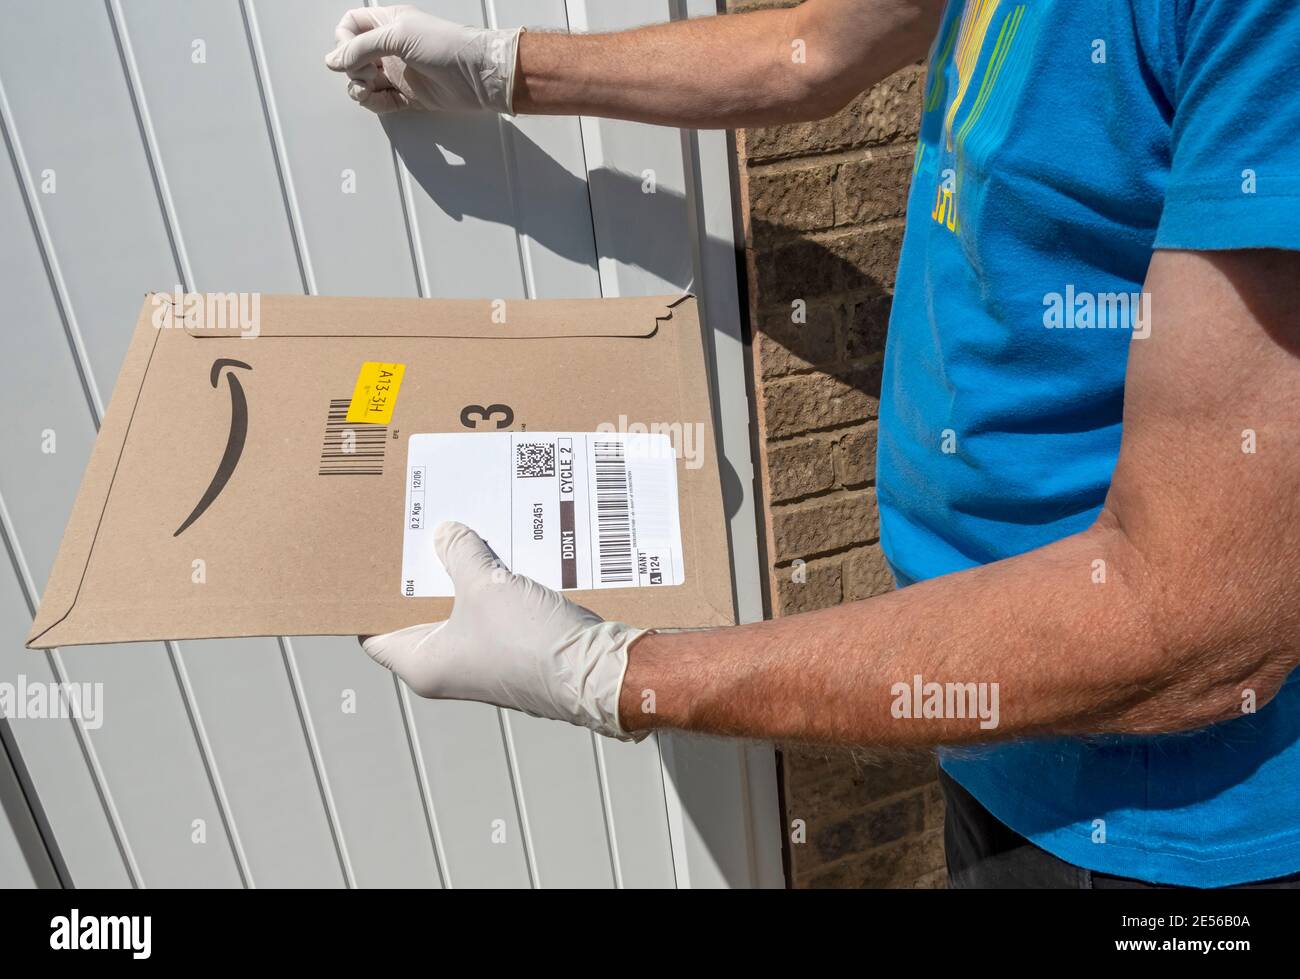 L'addetto alla consegna bussa alla porta di una casa per consegnare un pacco Amazon. Foto Stock